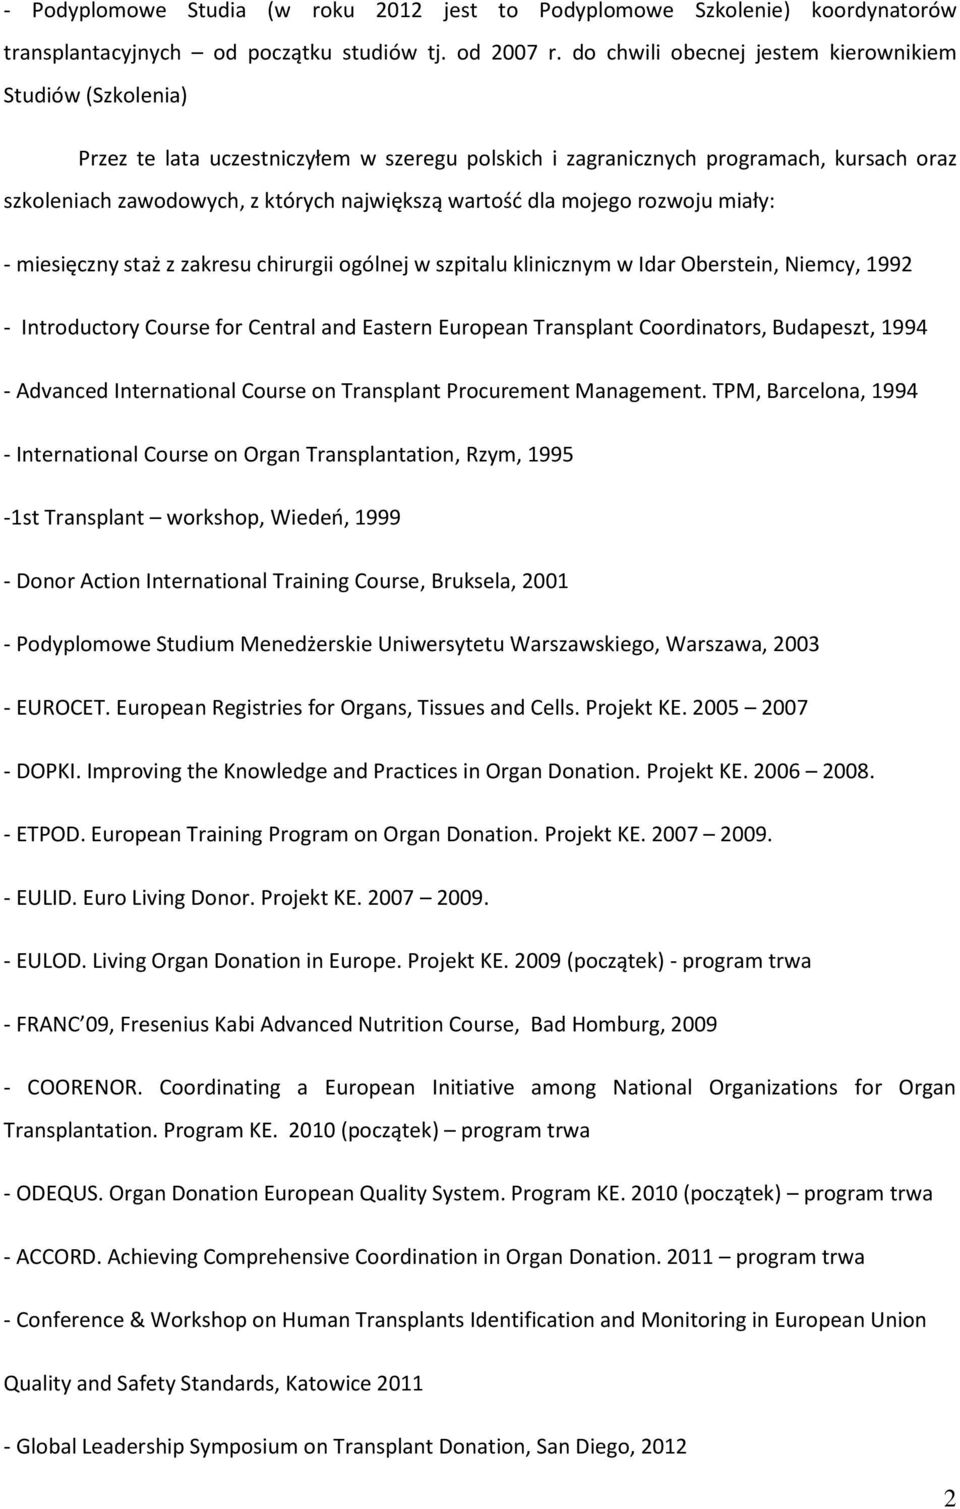 dla mojego rozwoju miały: - miesięczny staż z zakresu chirurgii ogólnej w szpitalu klinicznym w Idar Oberstein, Niemcy, 1992 - Introductory Course for Central and Eastern European Transplant